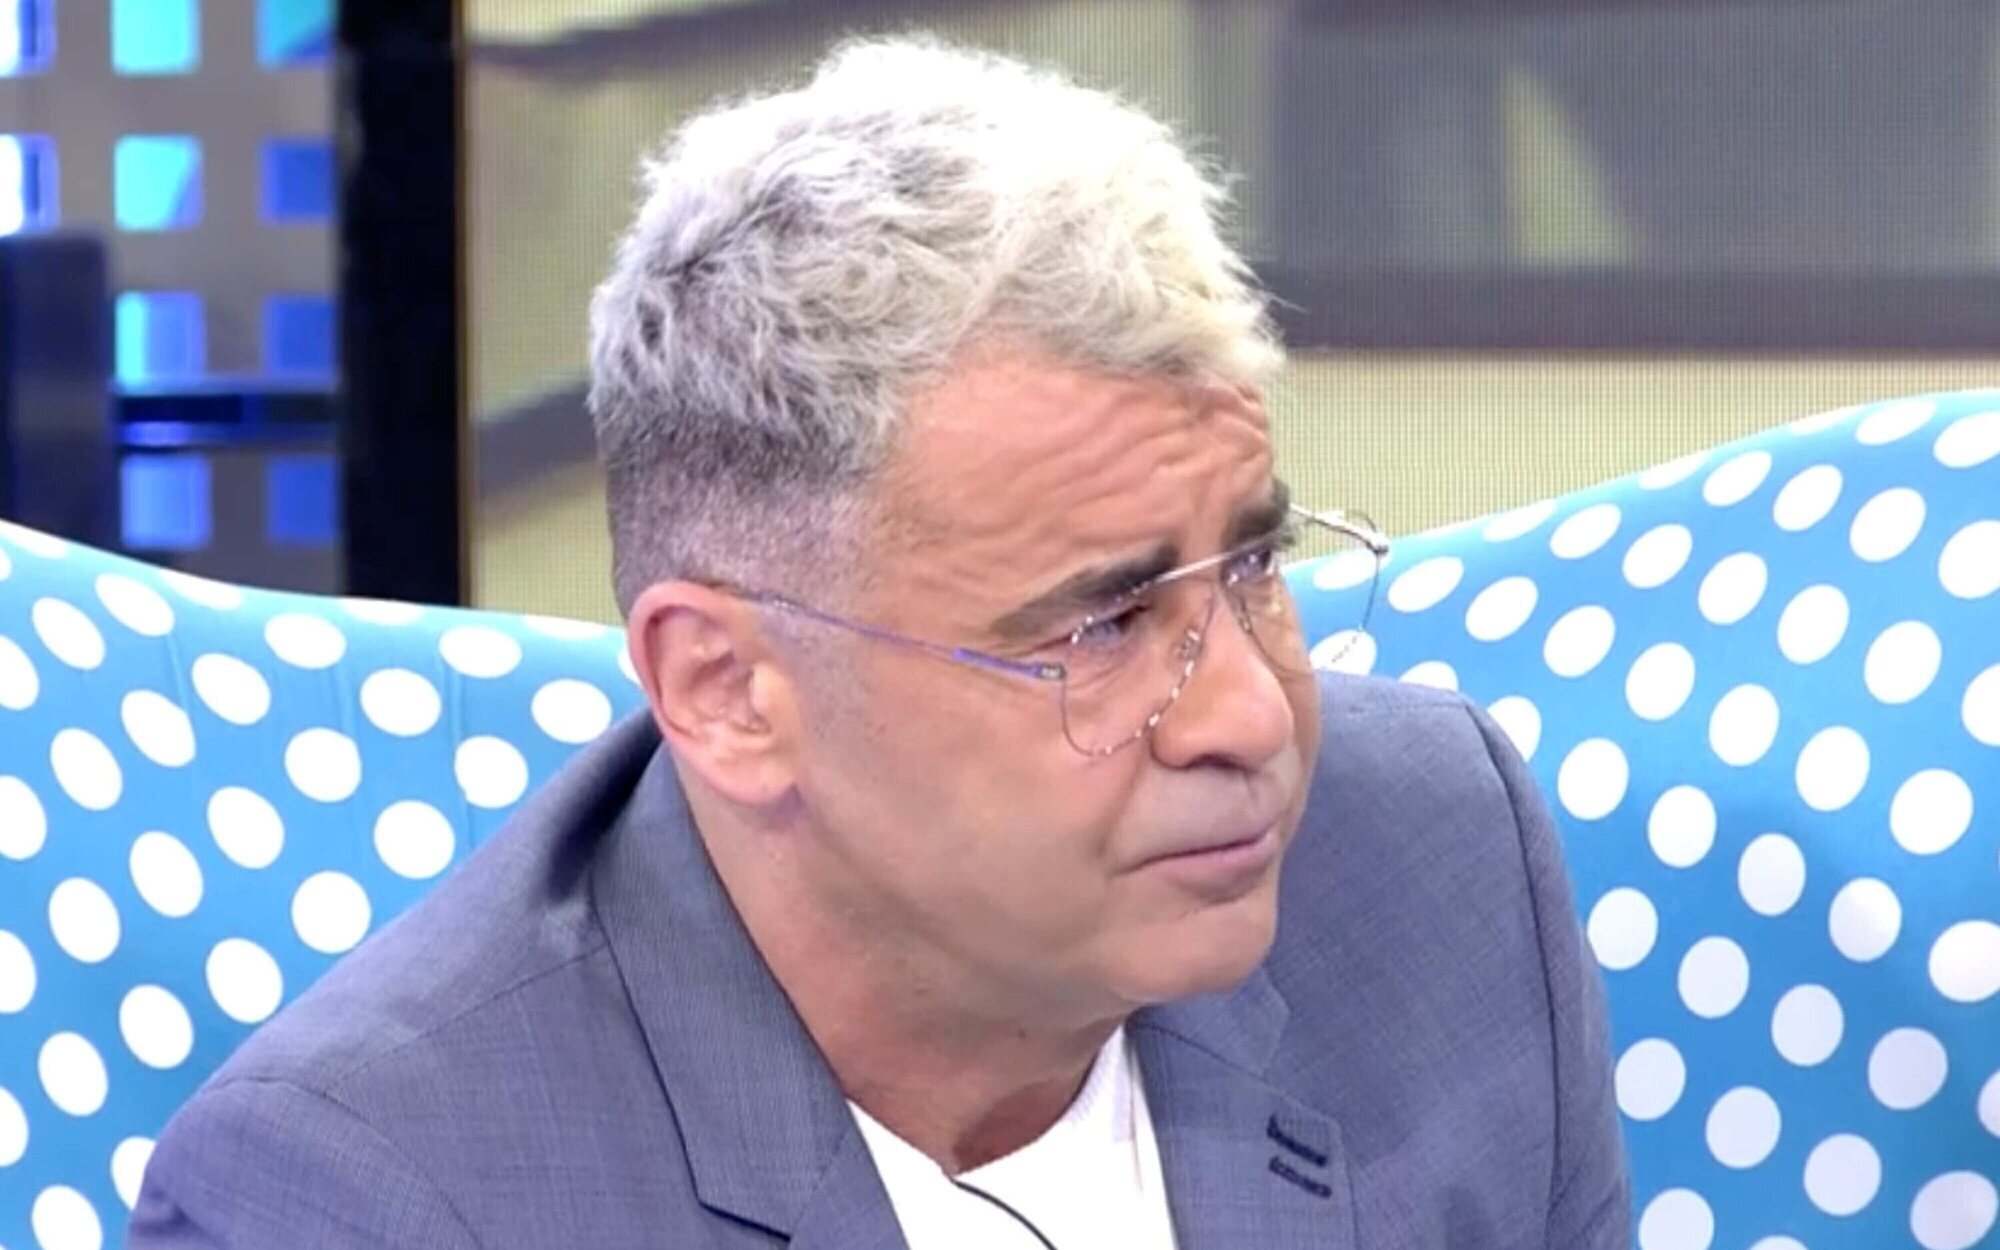 Jorge Javier Vázquez defiende las provocaciones en Telecinco para no "cerrar la persiana" de 'Sálvame'